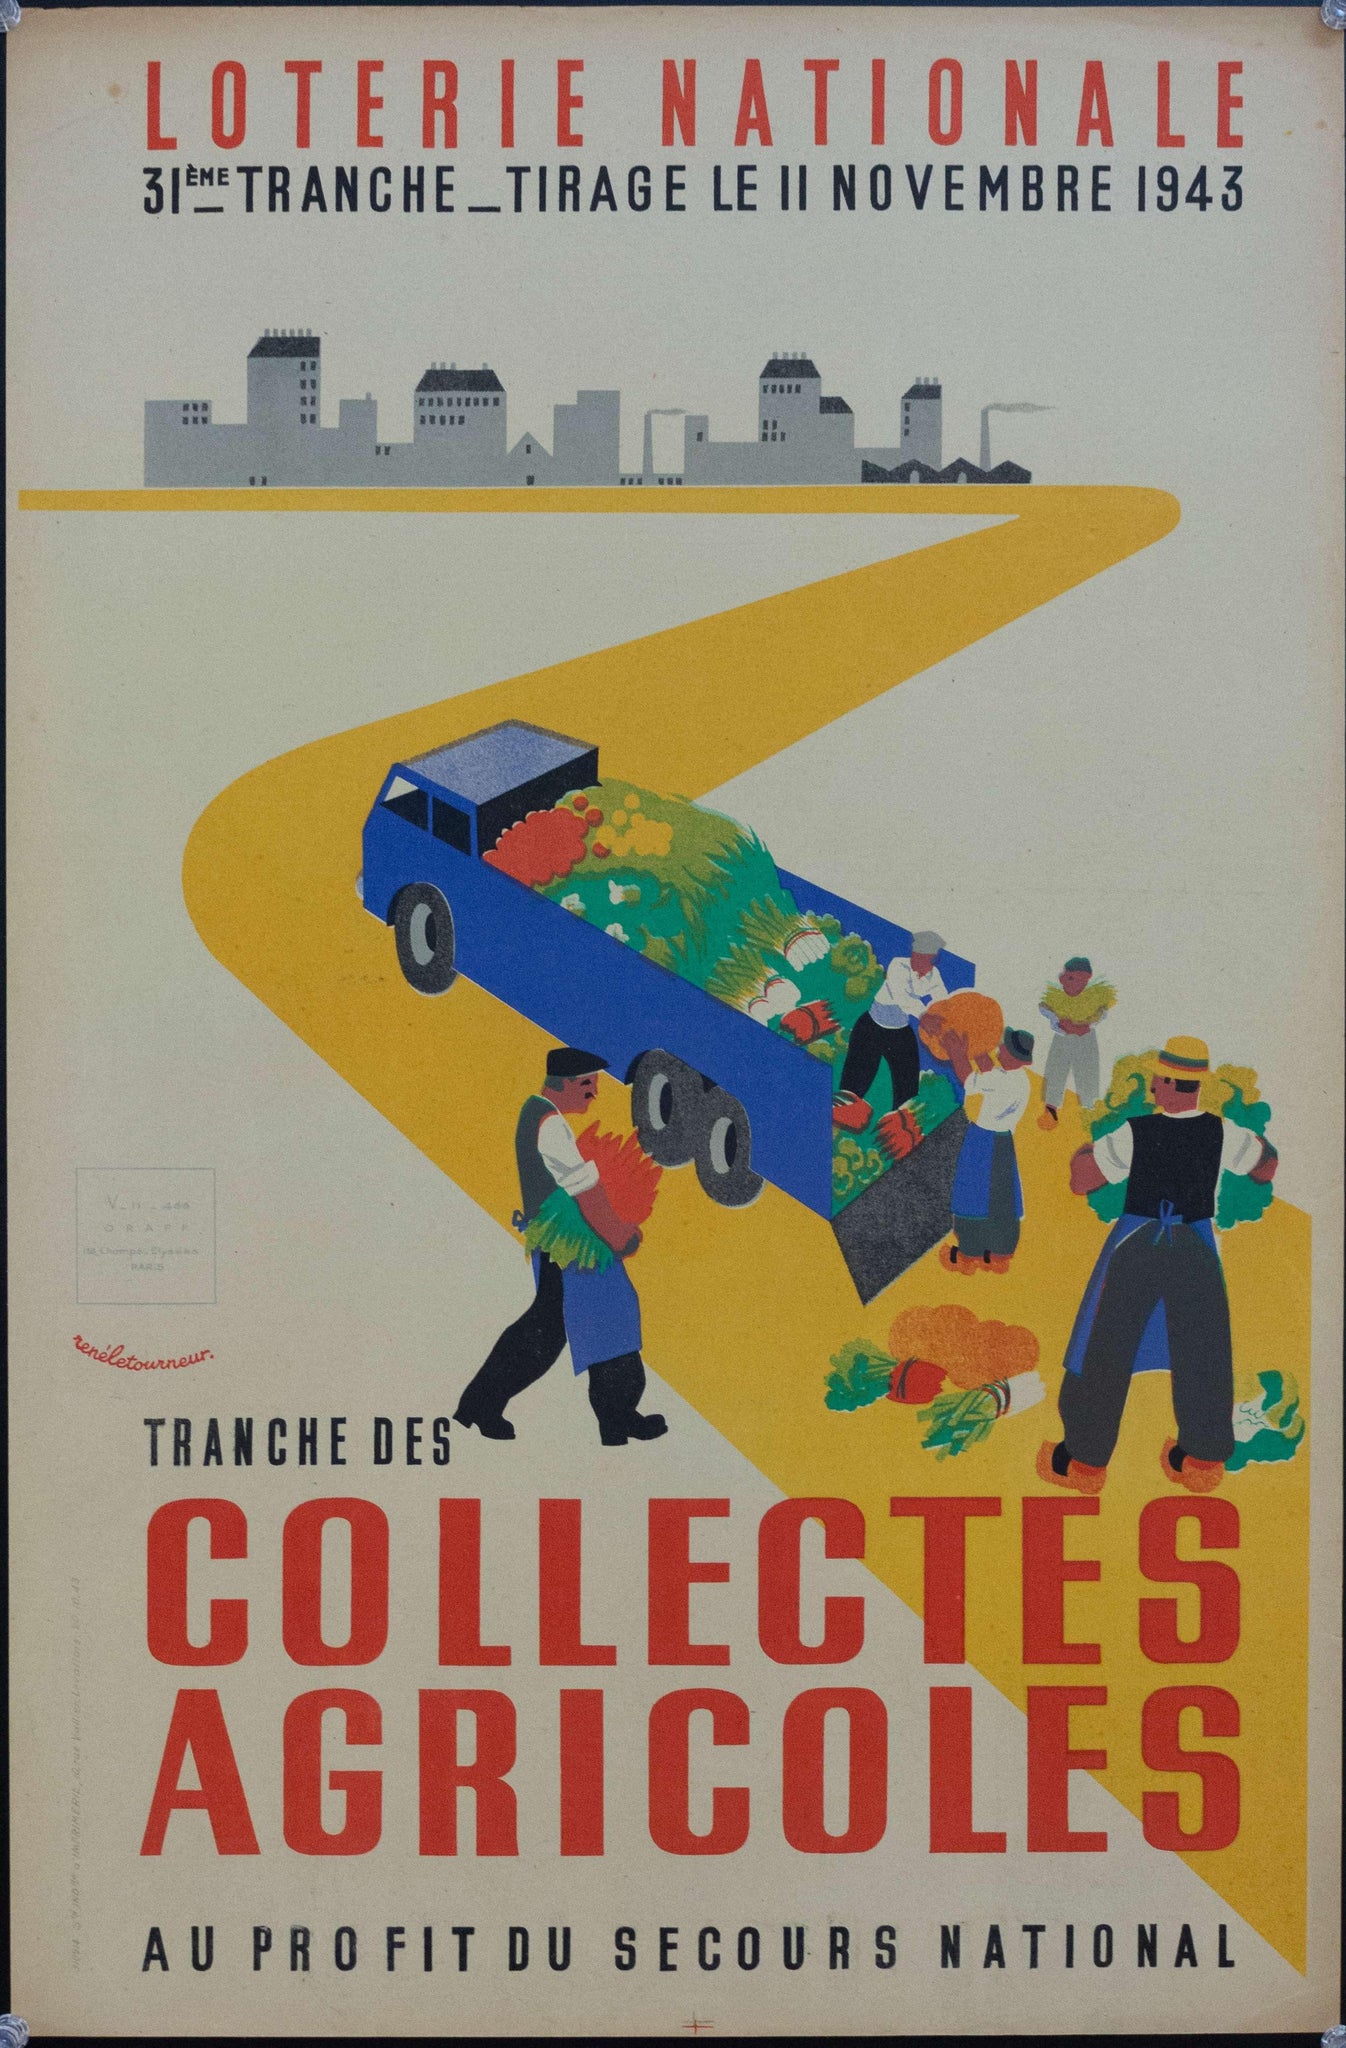 1943 Tranche Des Collectes Agricoles Au Profit Du Secours National | Loterie Nationale - Golden Age Posters